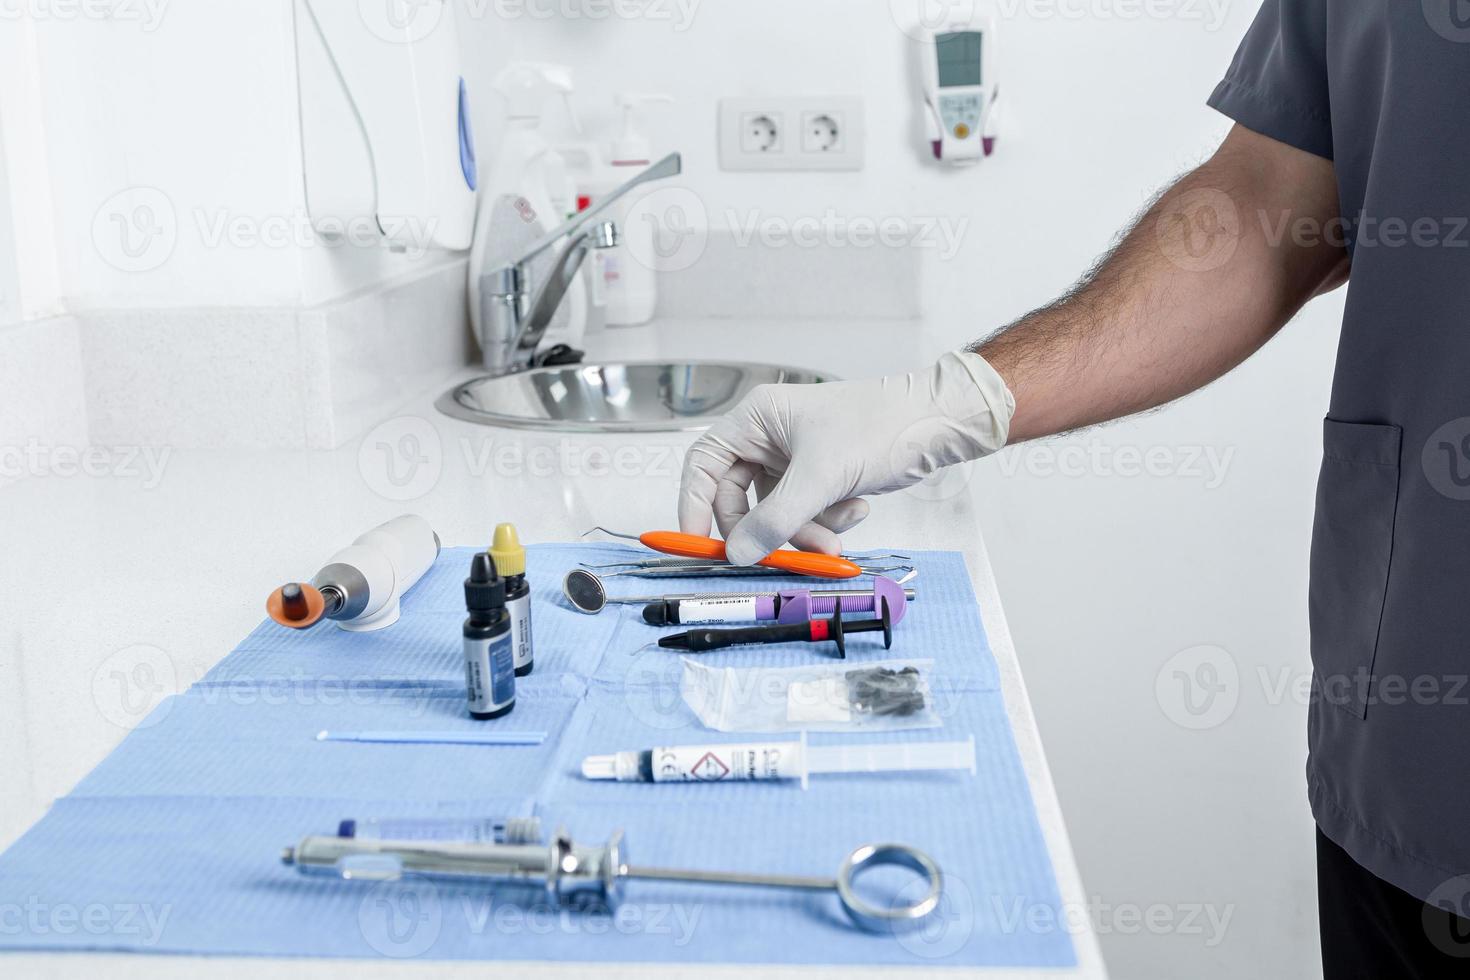 peson che preleva uno strumento da un tavolo con strumenti sterili per una clinica odontoiatrica foto